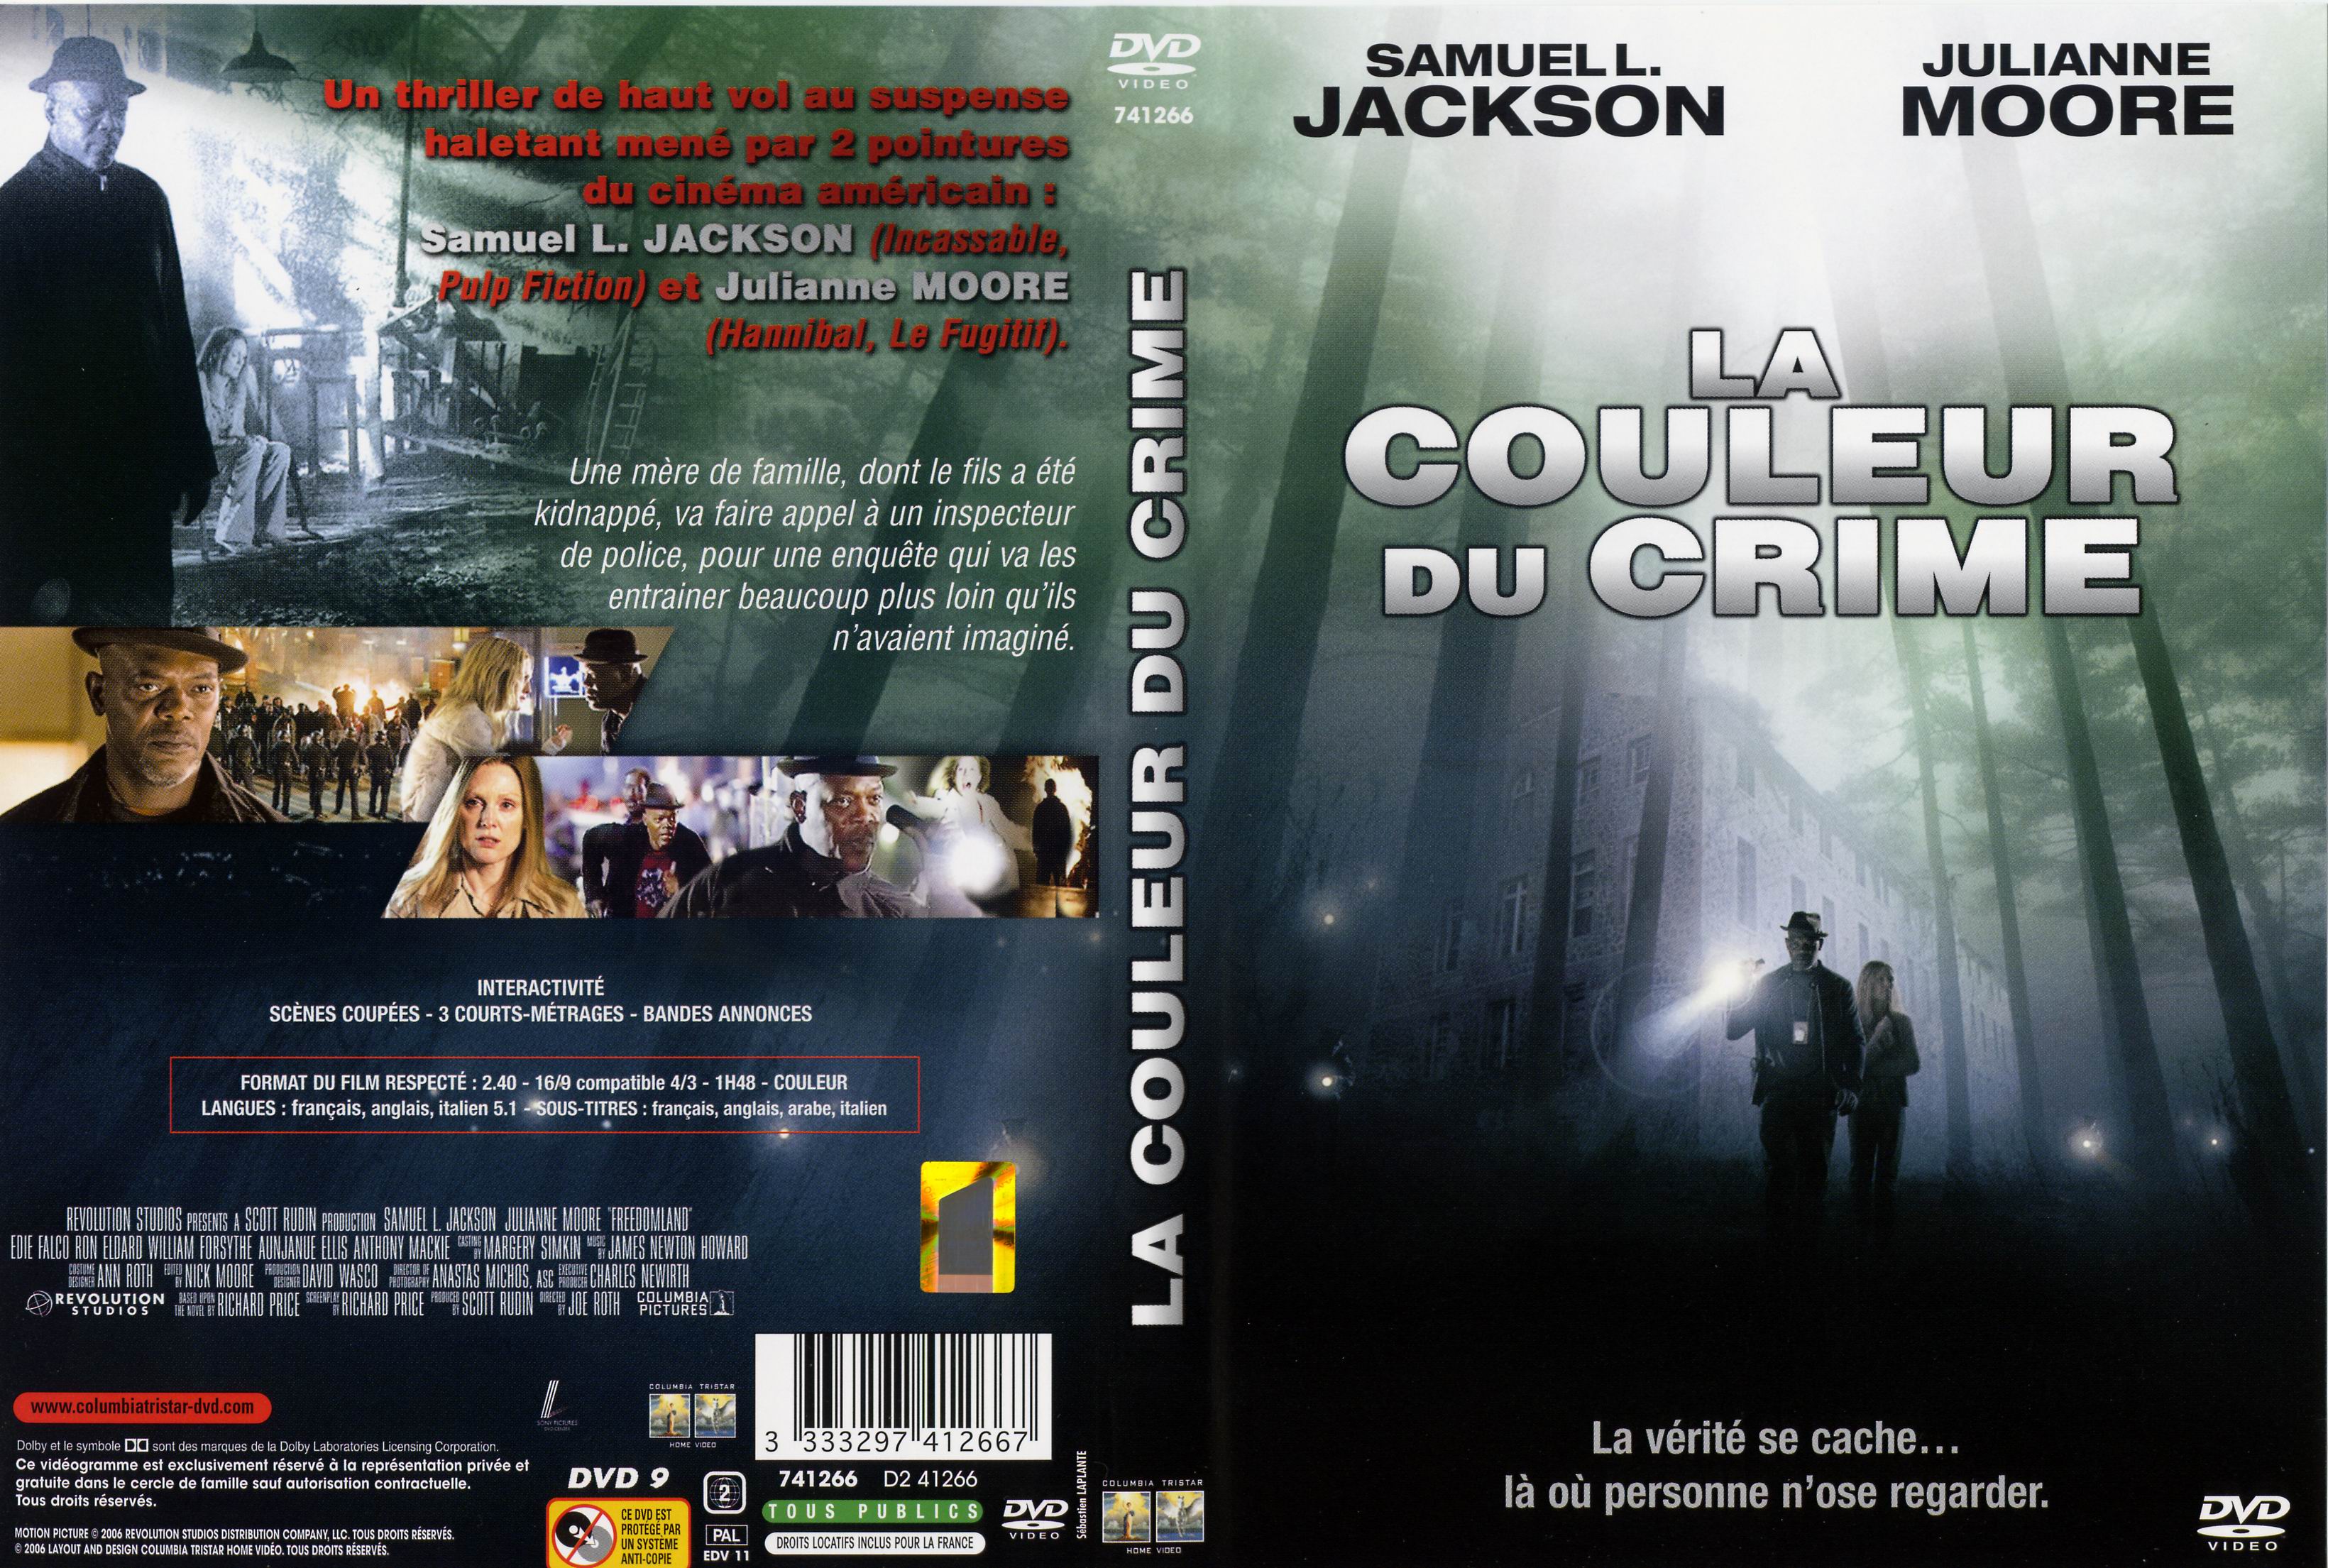 Jaquette DVD La couleur du crime